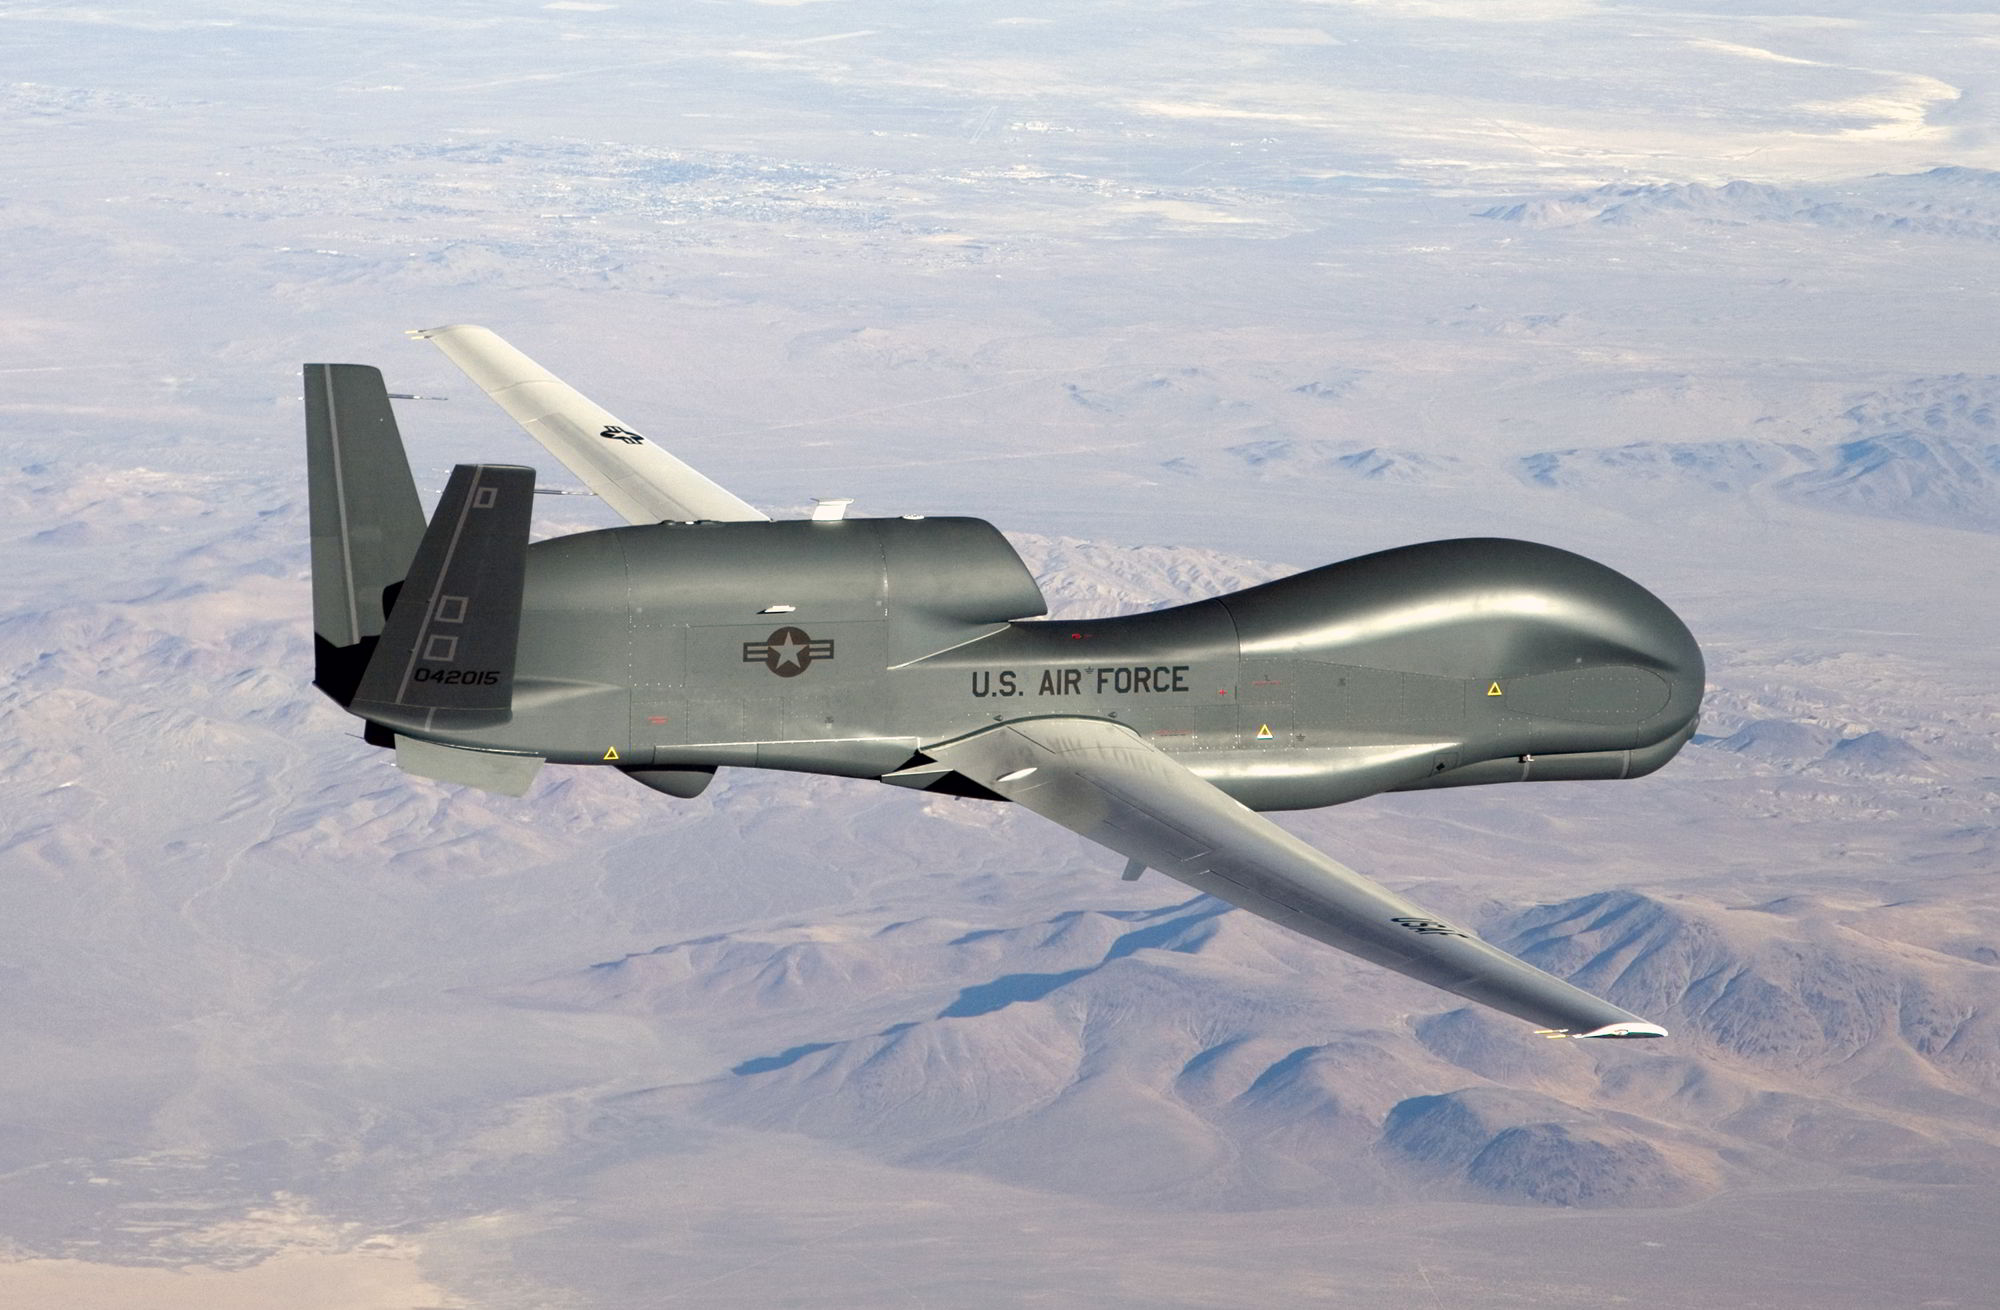  RQ-4 Global Hawk unmanned aircraft system (UAS) 